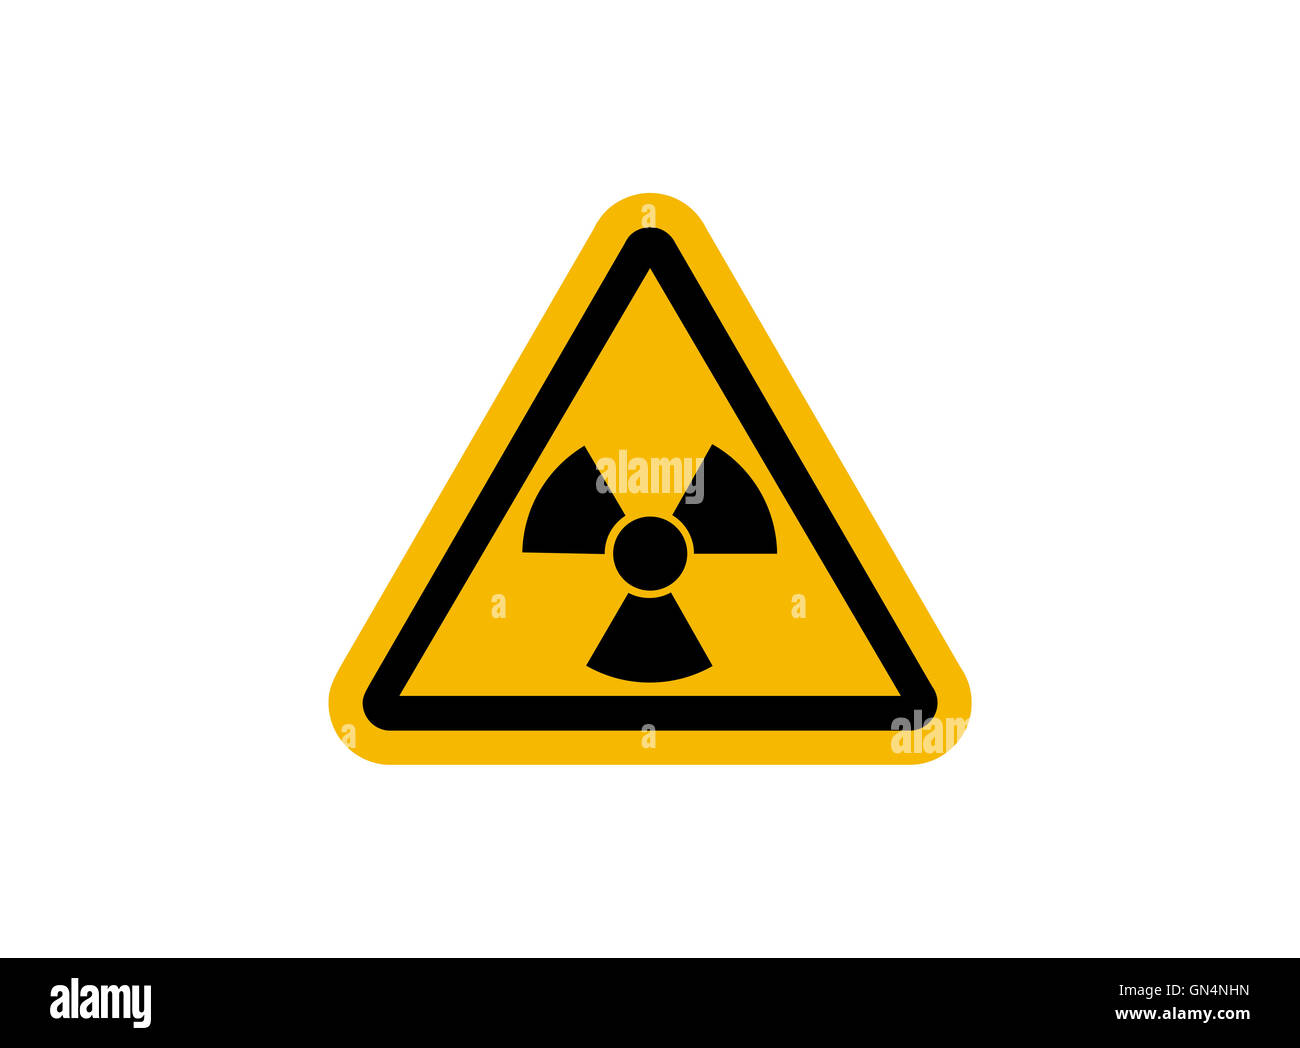 Strahlung Schild mit glänzend gelbe Fläche Stockfoto